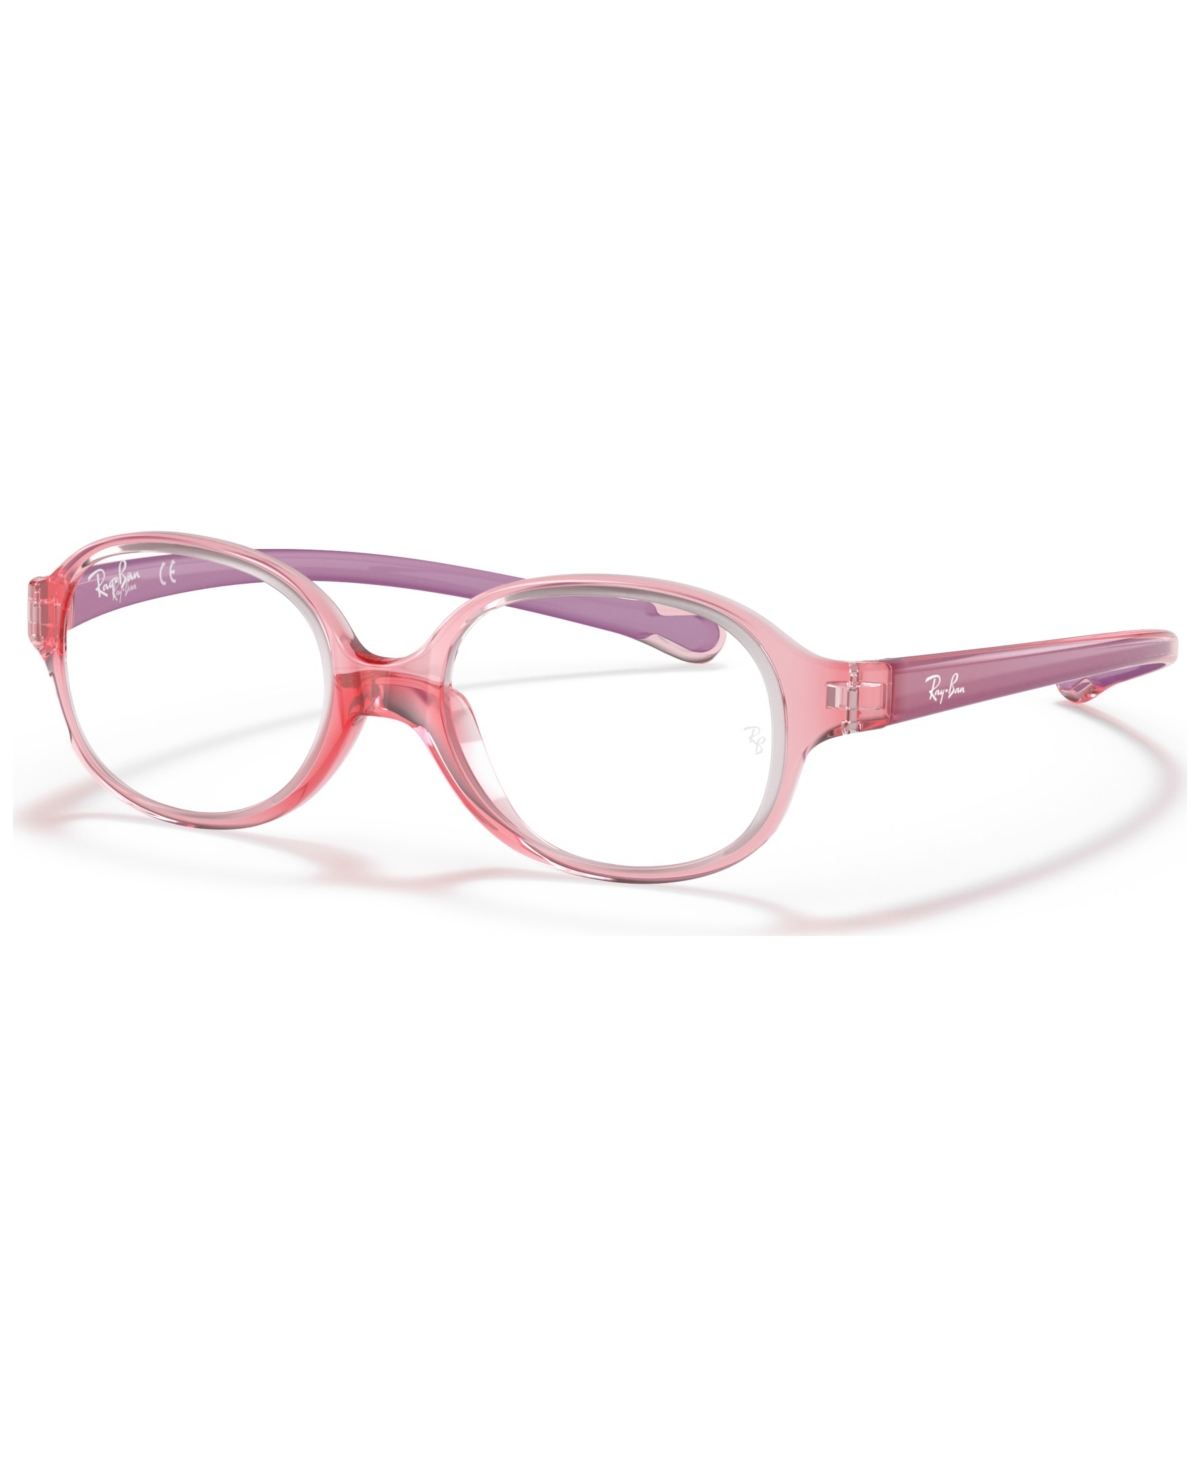 Child Eyeglasses, RB1587 - Transparent Light Red